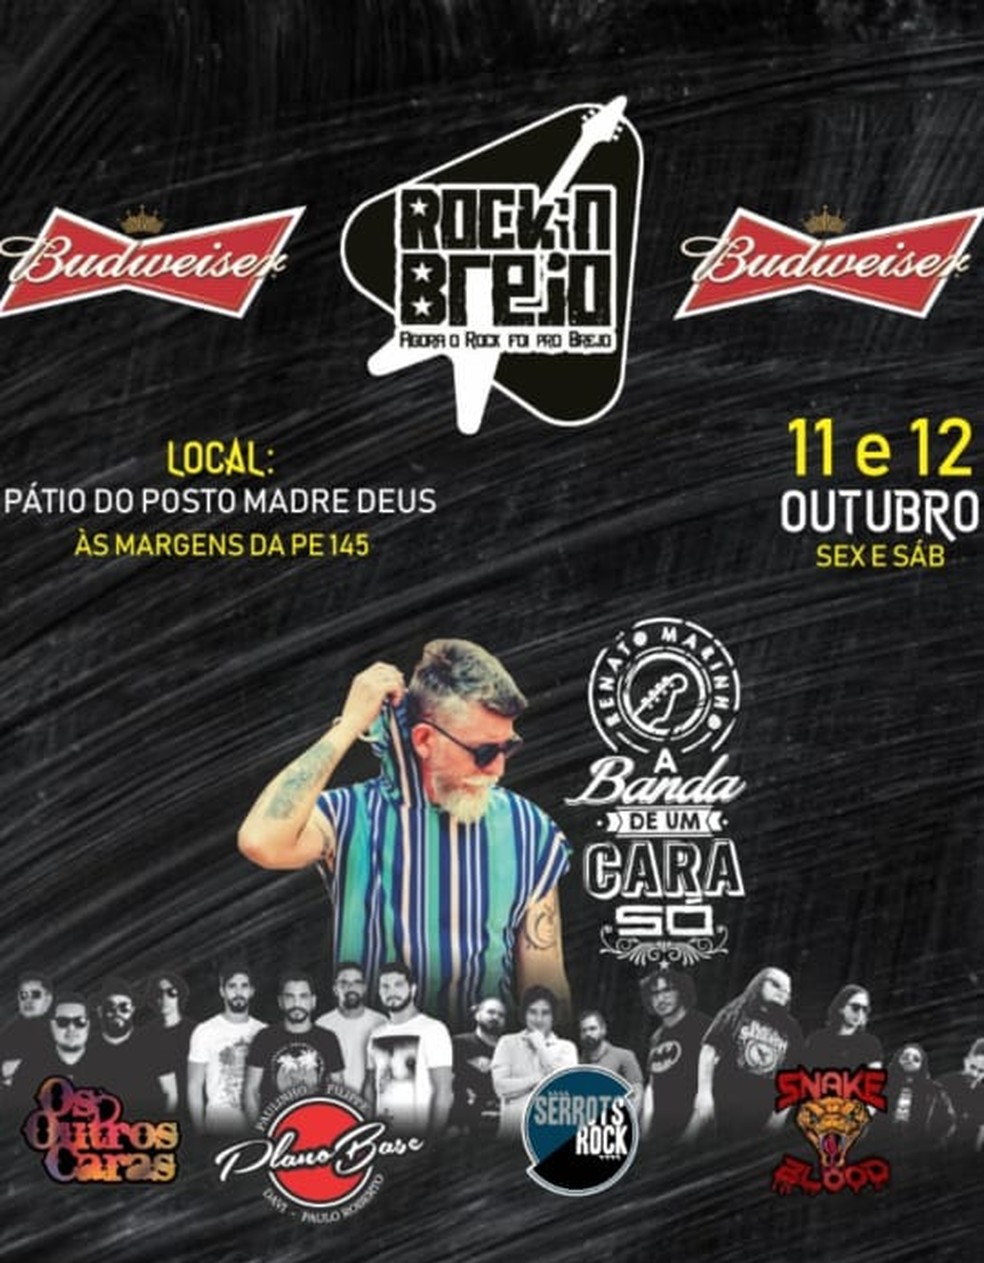 Festival de rock vai contar com apresentações musicais, exposição e vendas de artesanatos — Foto: Festival Rock no Brejo/Divulgação